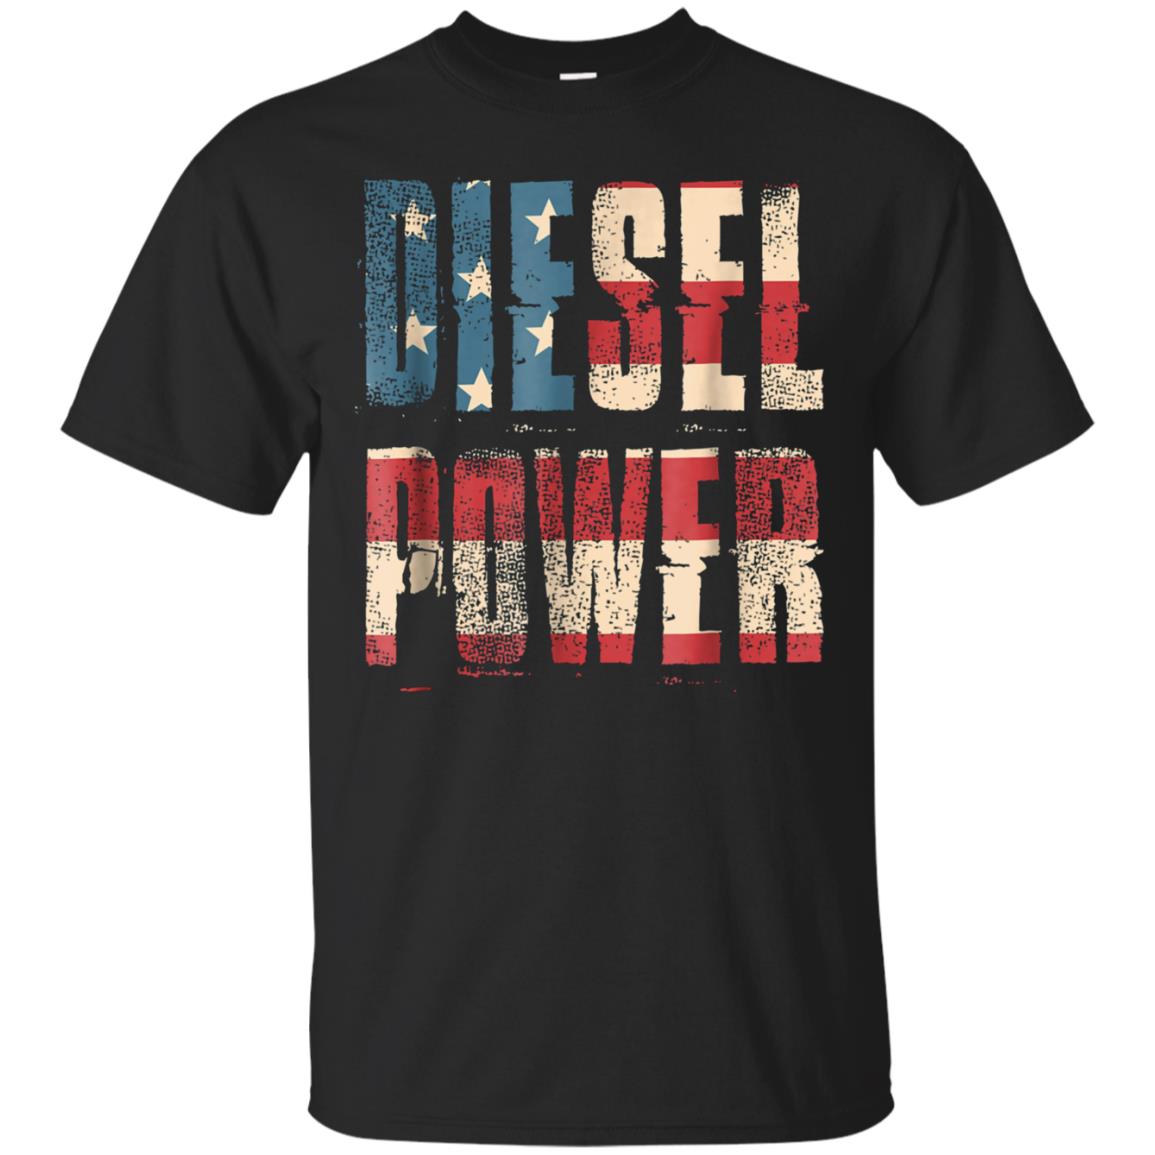 Diesel Power Flag Truck Turbo Mechanic T Shirt